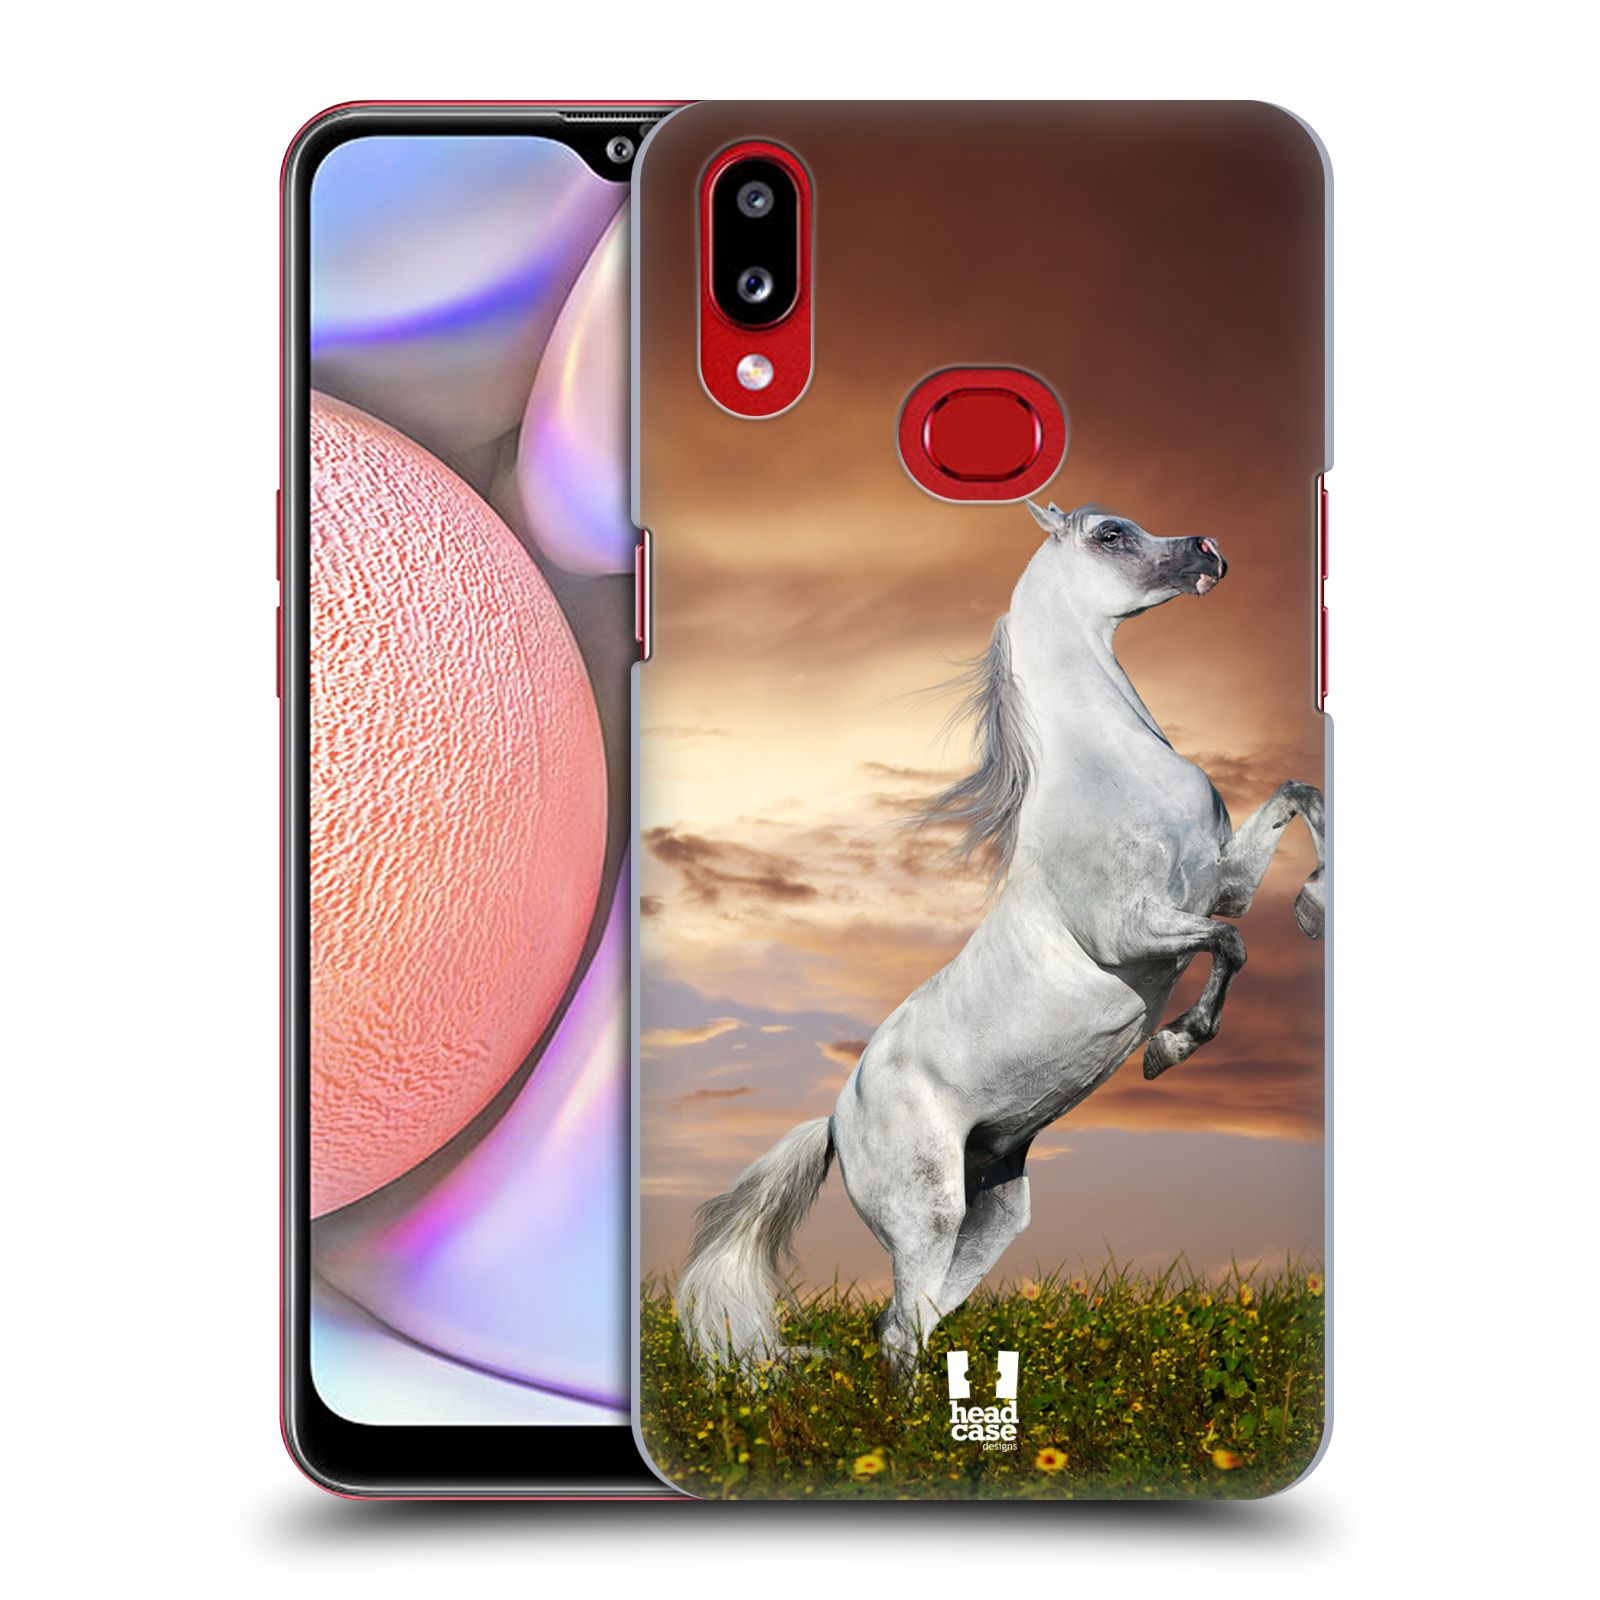 Zadní obal pro mobil Samsung Galaxy A10s - HEAD CASE - Svět zvířat divoký kůň